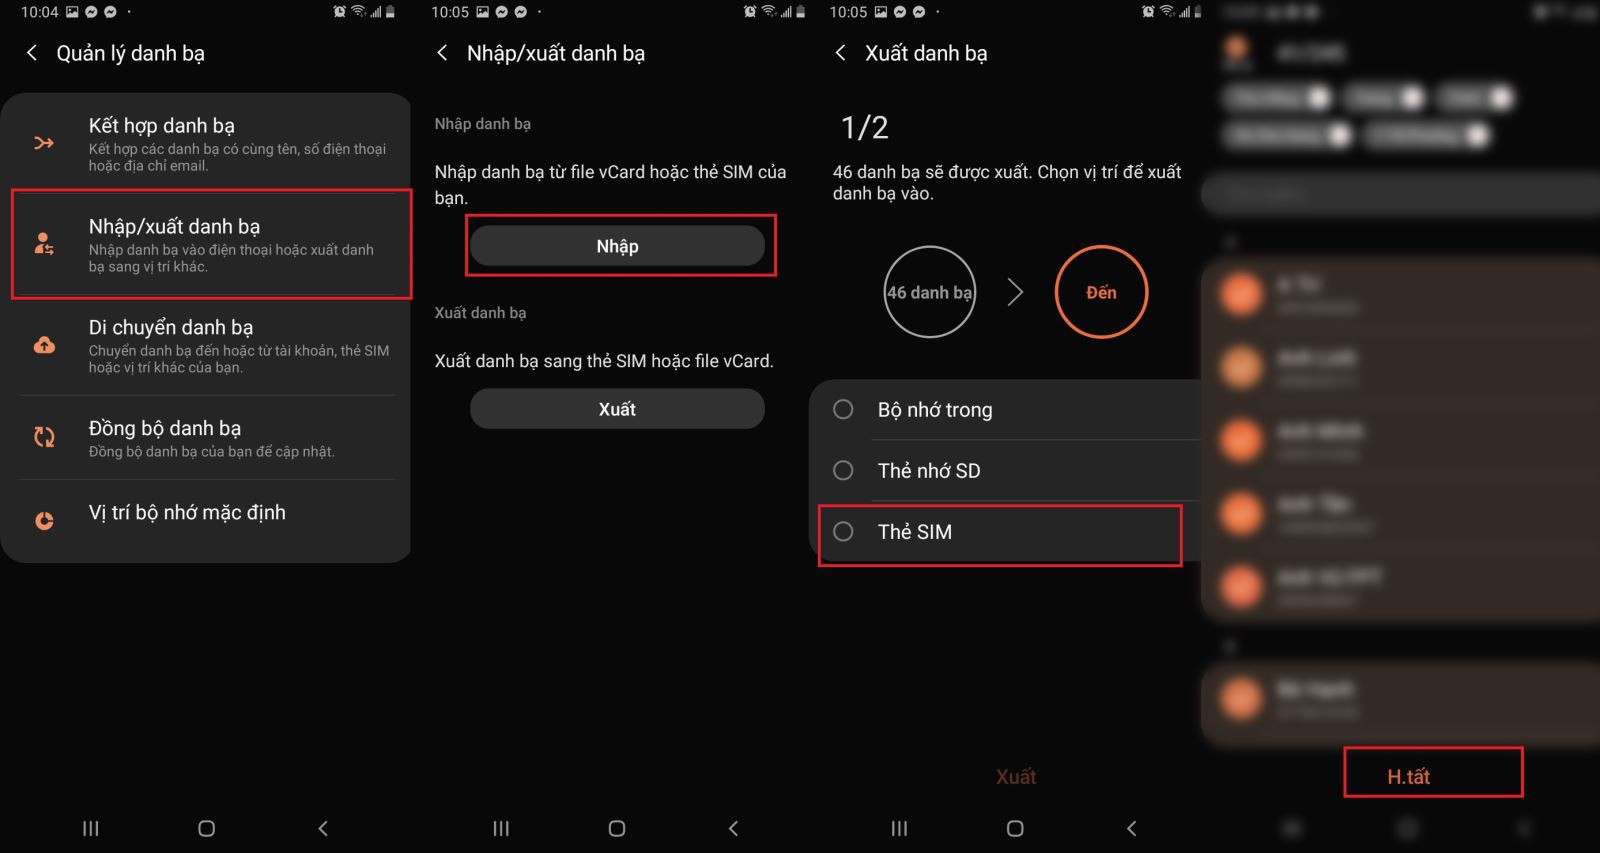 Cách chuyển danh bạ từ điện thoại sang Sim cho Android và iOS 